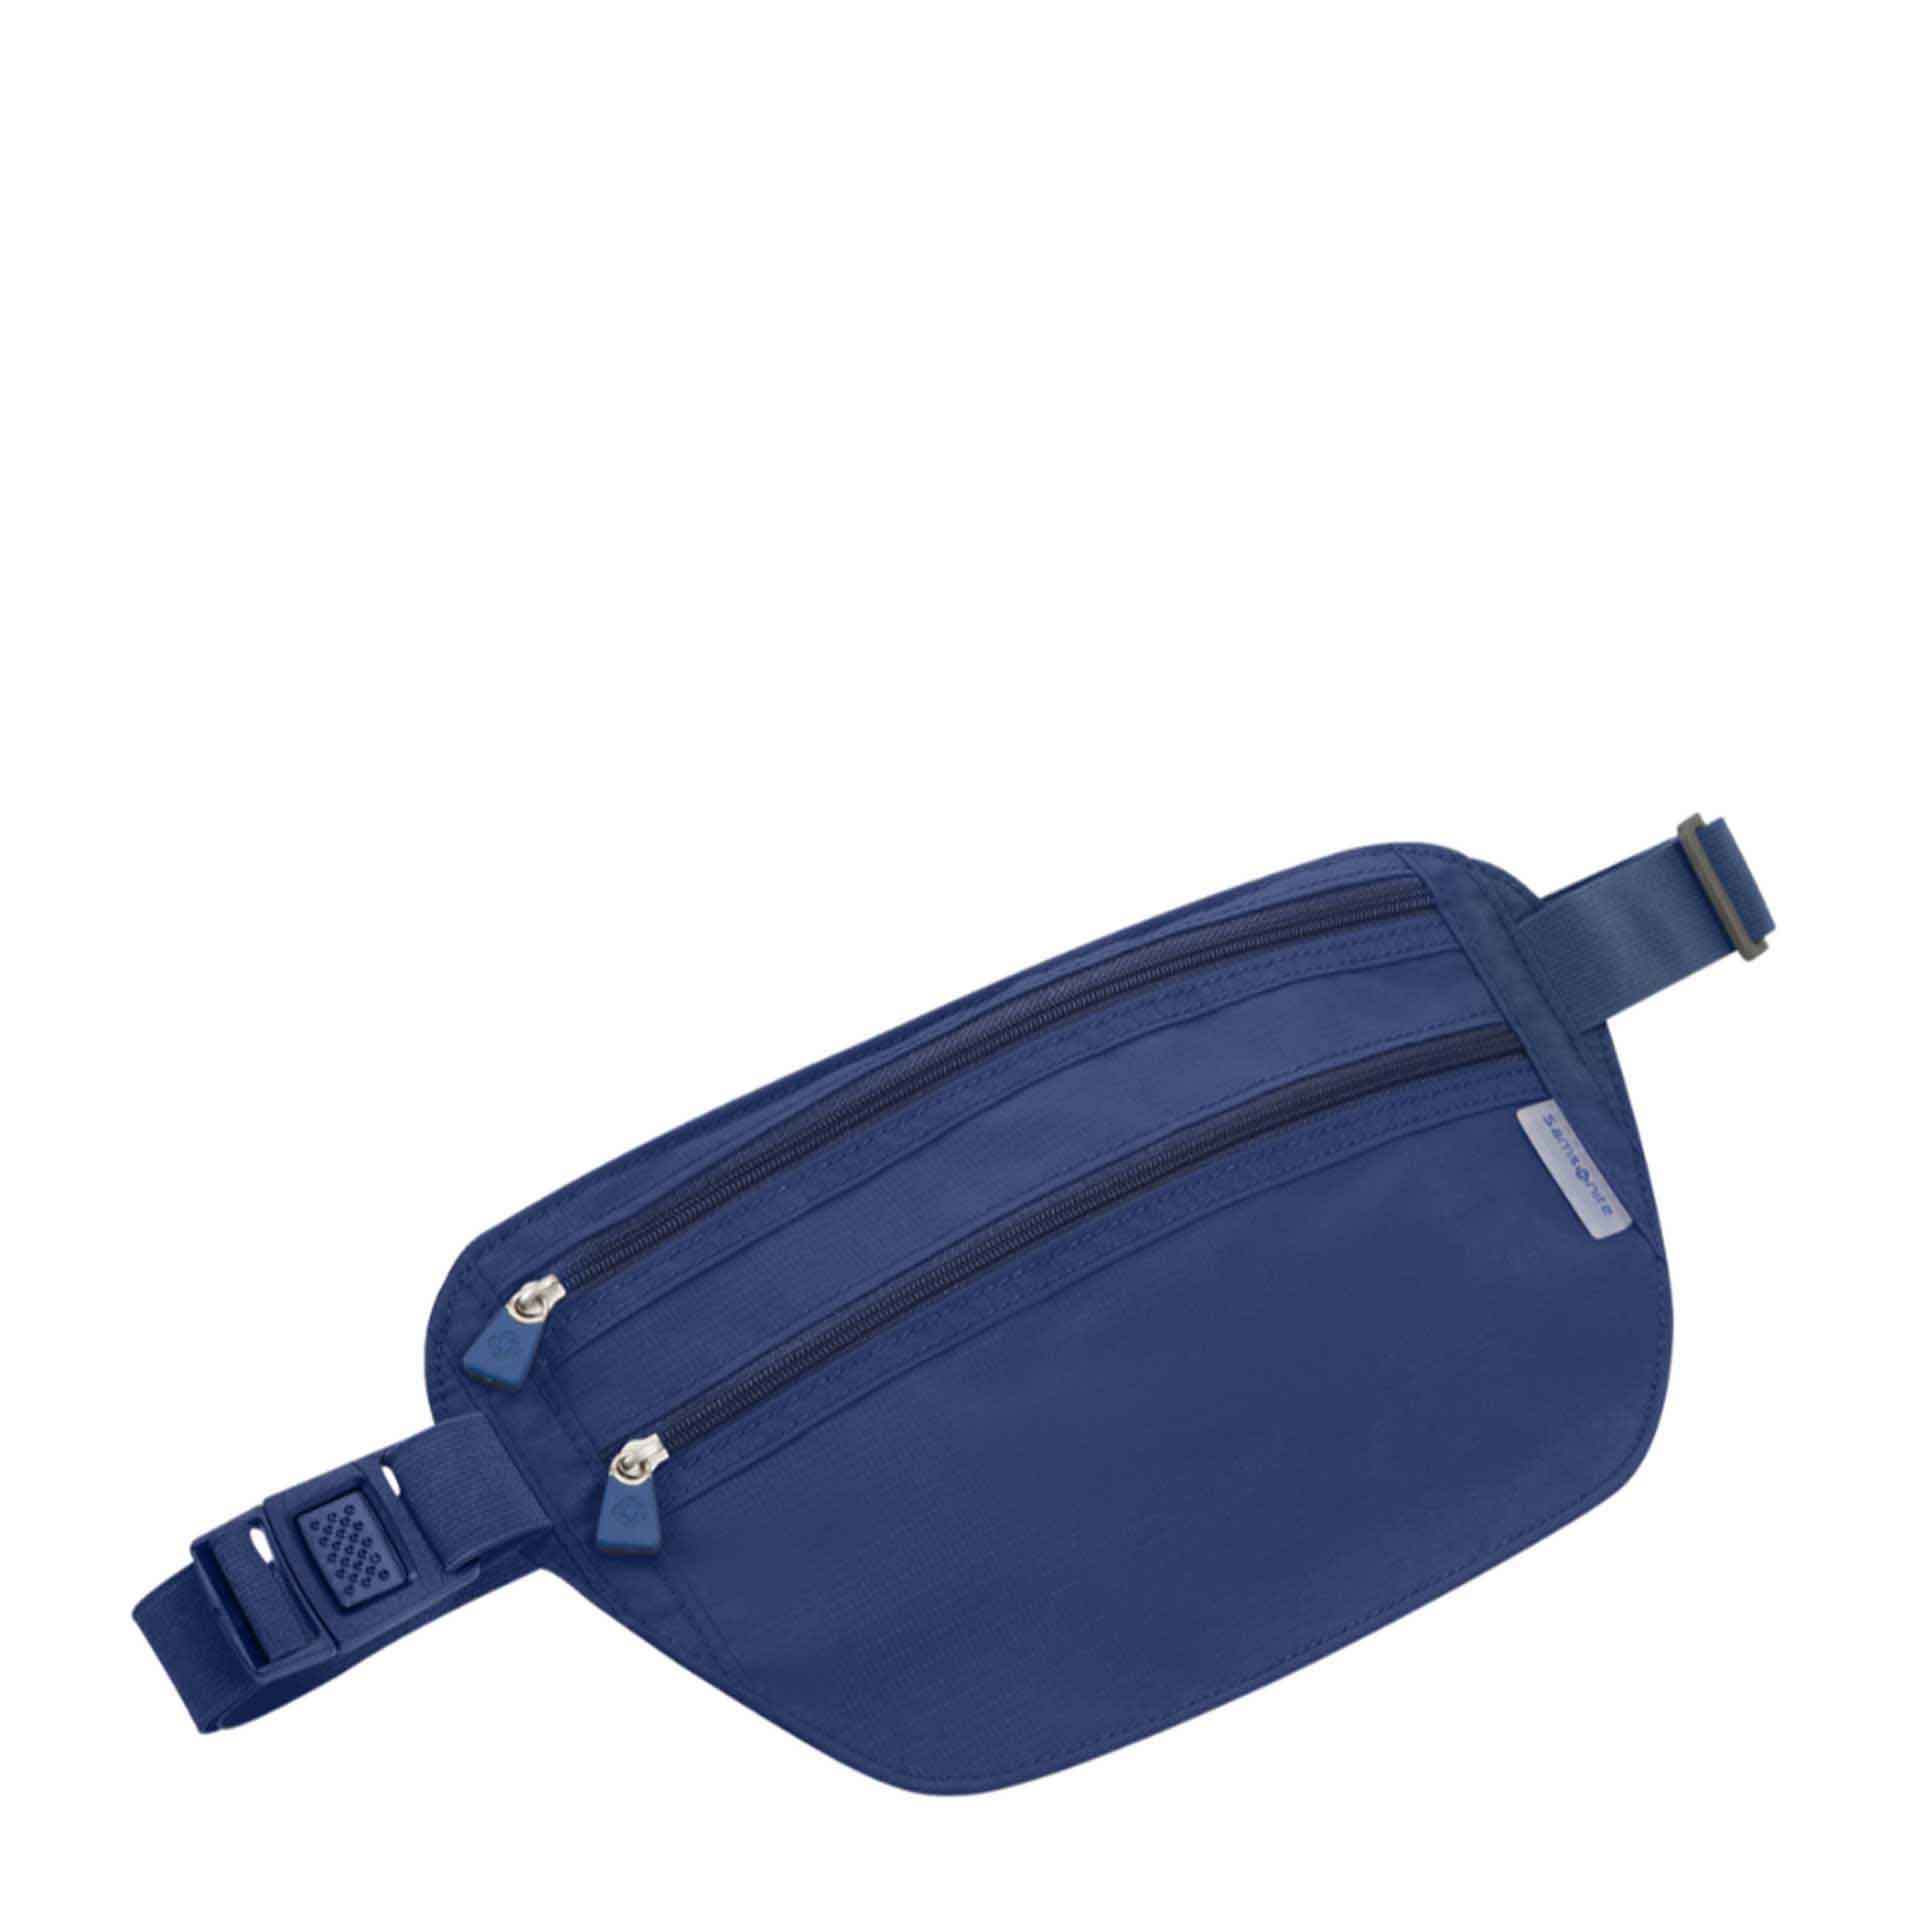 Samsonite Global Travel Accessories Hüftgurt mit RFID-Schutz midnight blue